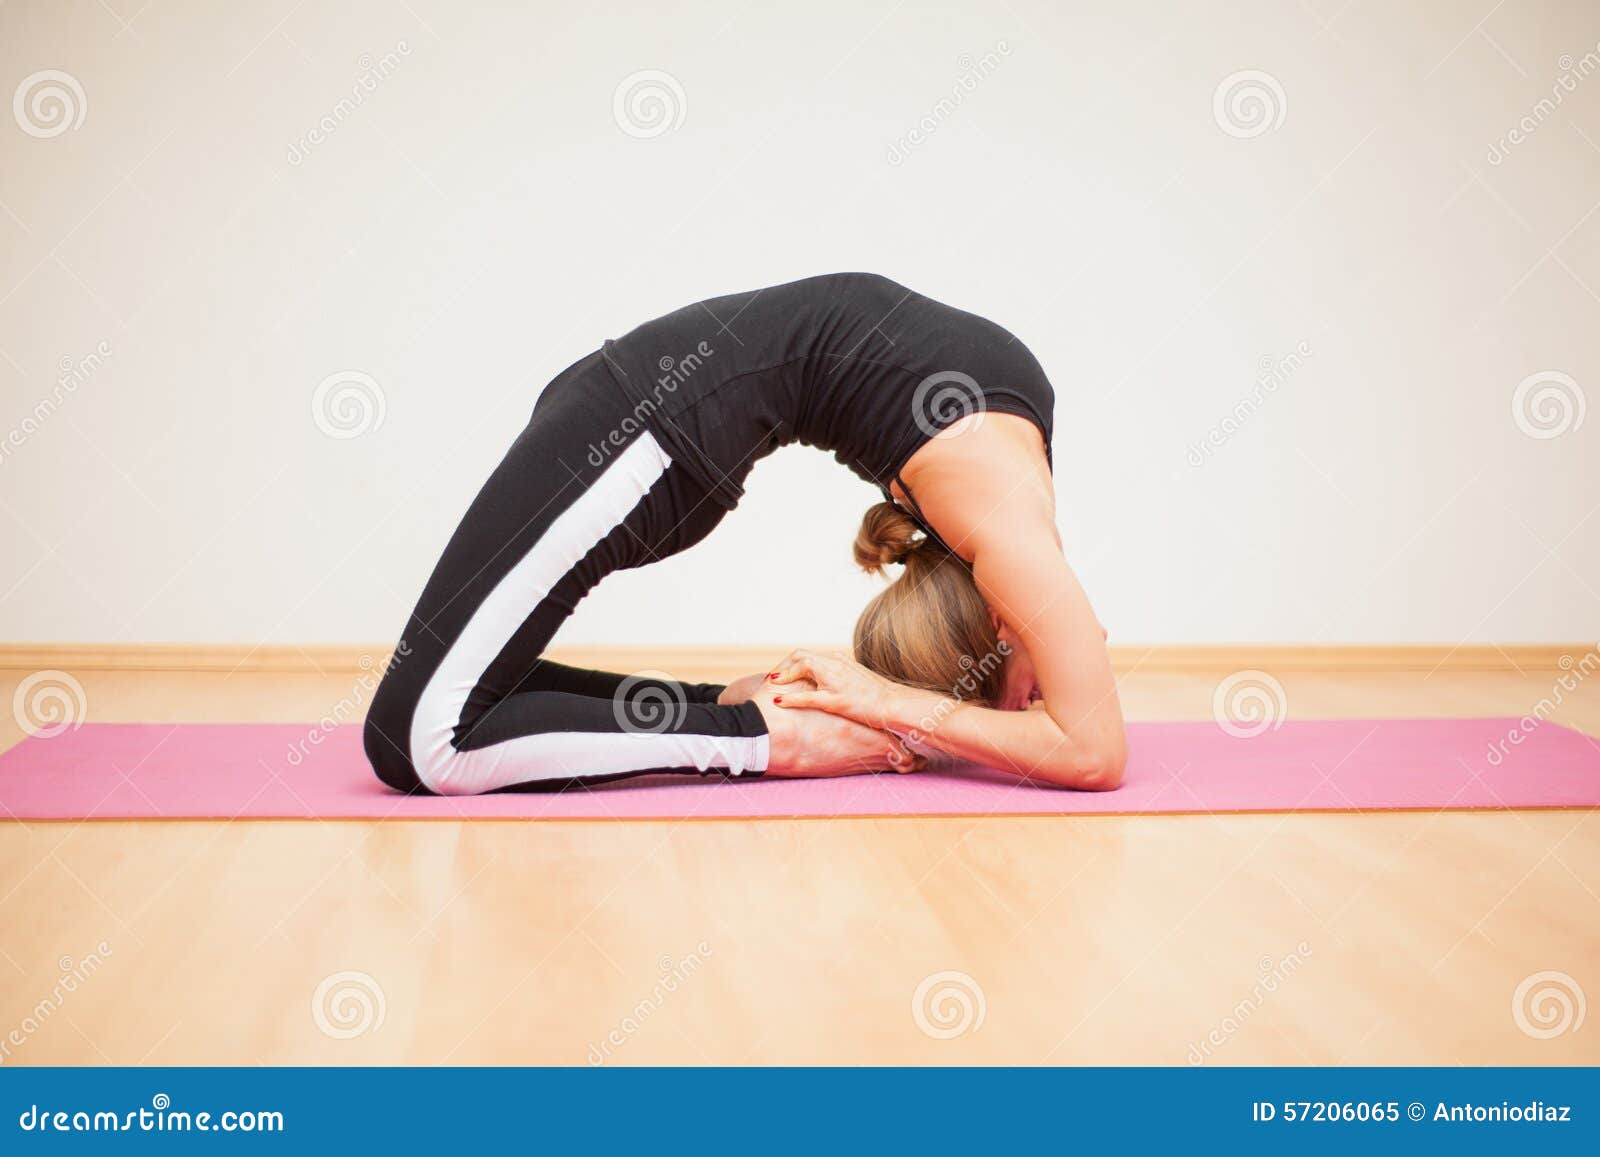 Details 130+ yoga back bend poses best - kidsdream.edu.vn